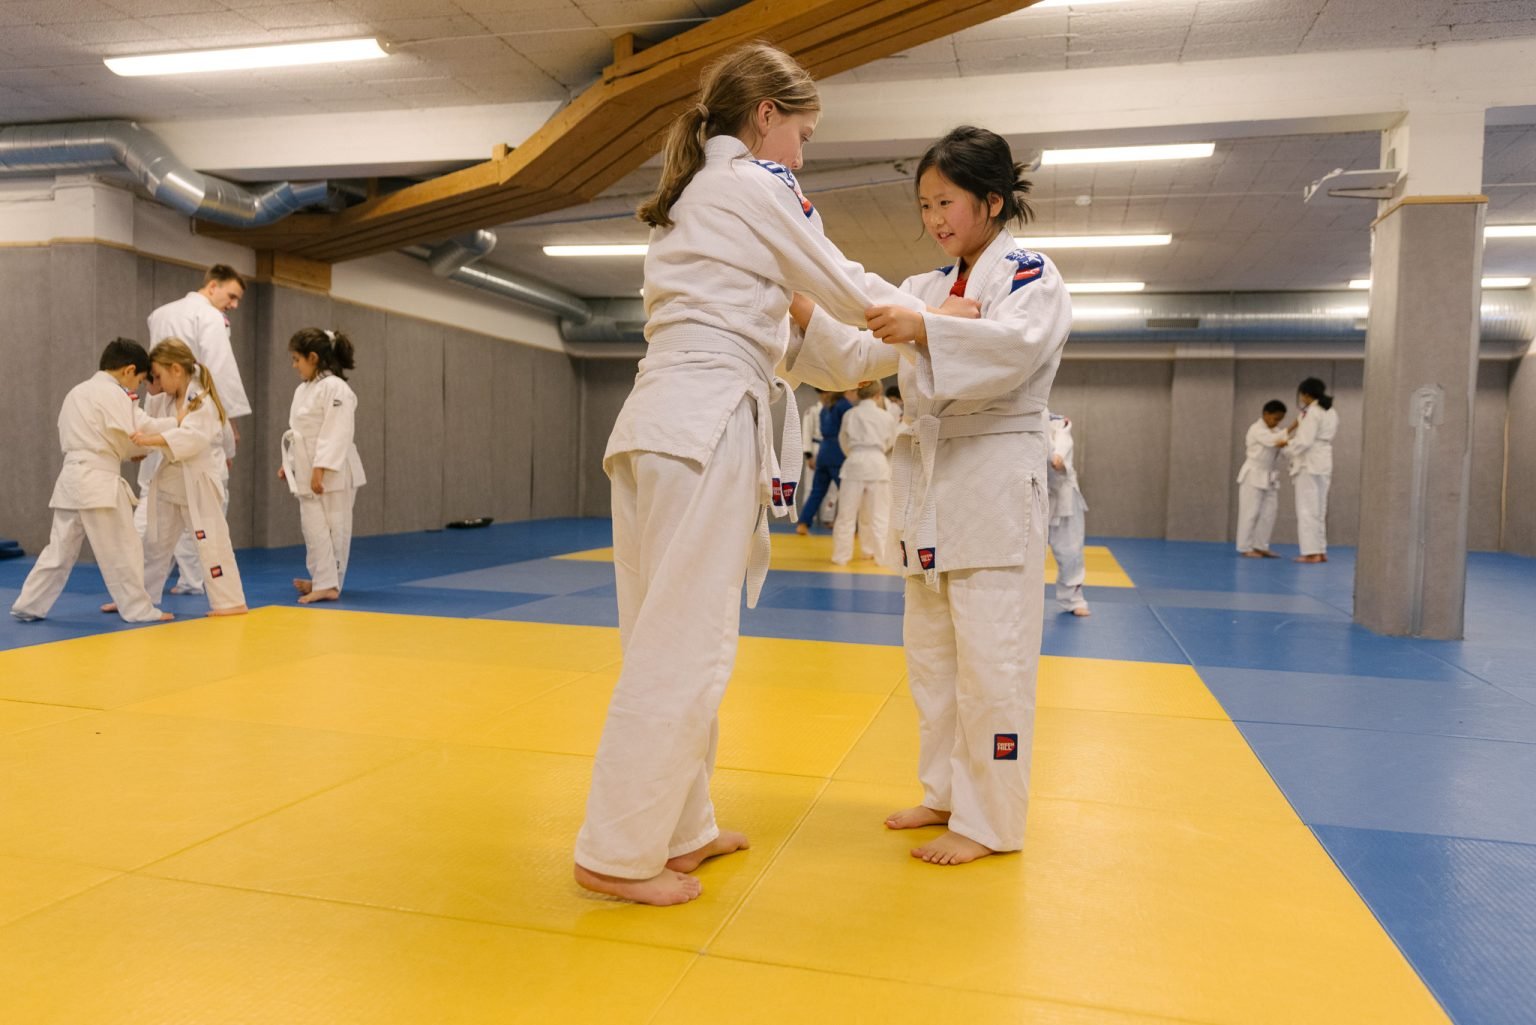 to jenter iført judodrakter holder i hverandre like før de skal utføre bakkekampøvelser i en treningssal med gulvet dekket av madrasser i blått og gult. I bakgrunnen sees andre idrettsutøvere som også trener.